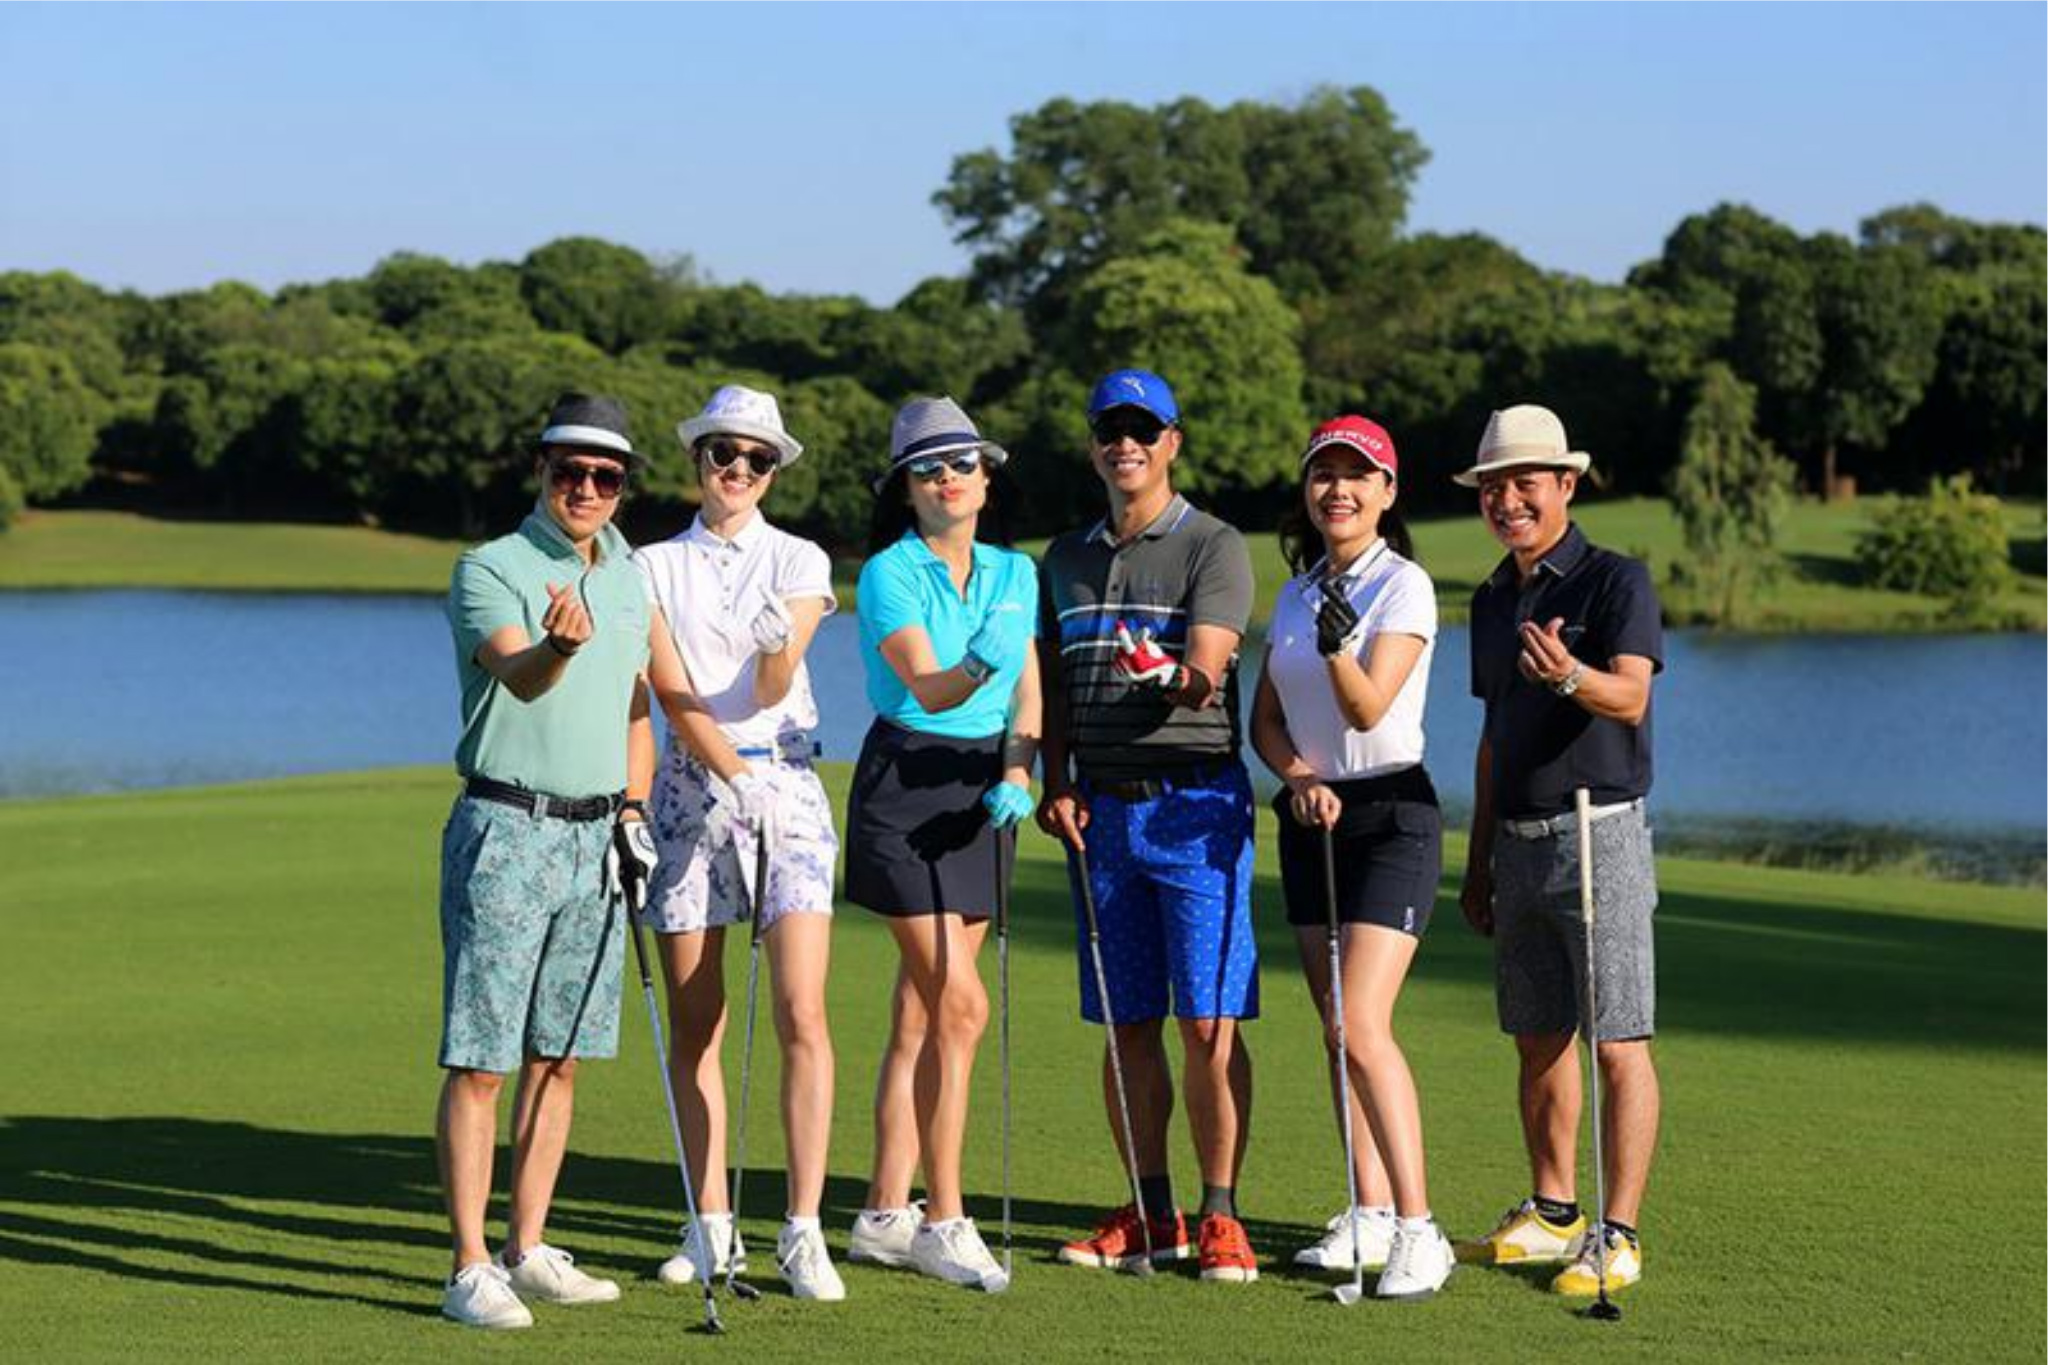 Số lượng golfer ngày càng tăng cho thấy xu hướng chơi golf đang rất phát triển tại Việt Nam